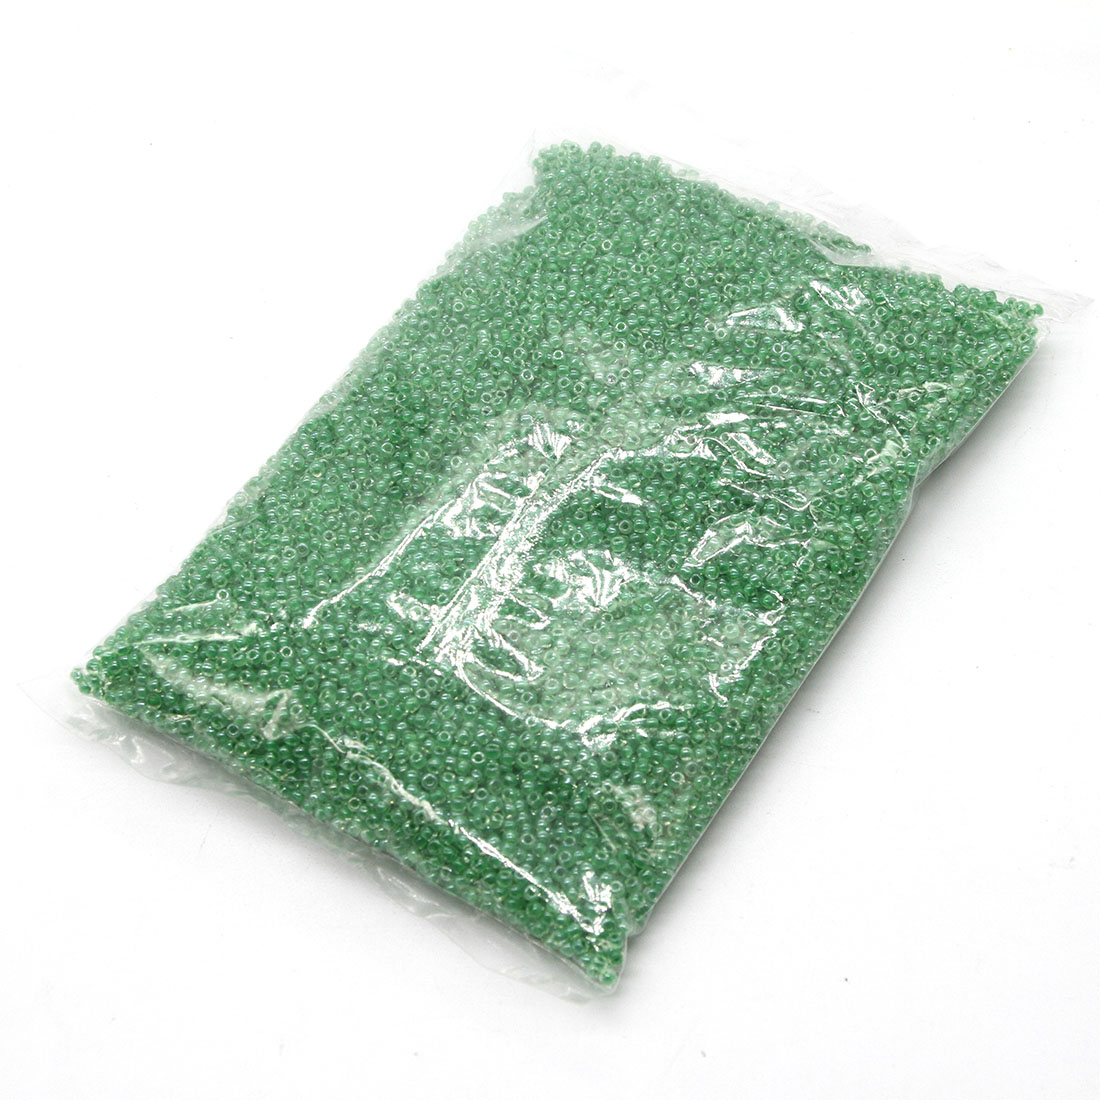 Green 2mm 30,000 packs